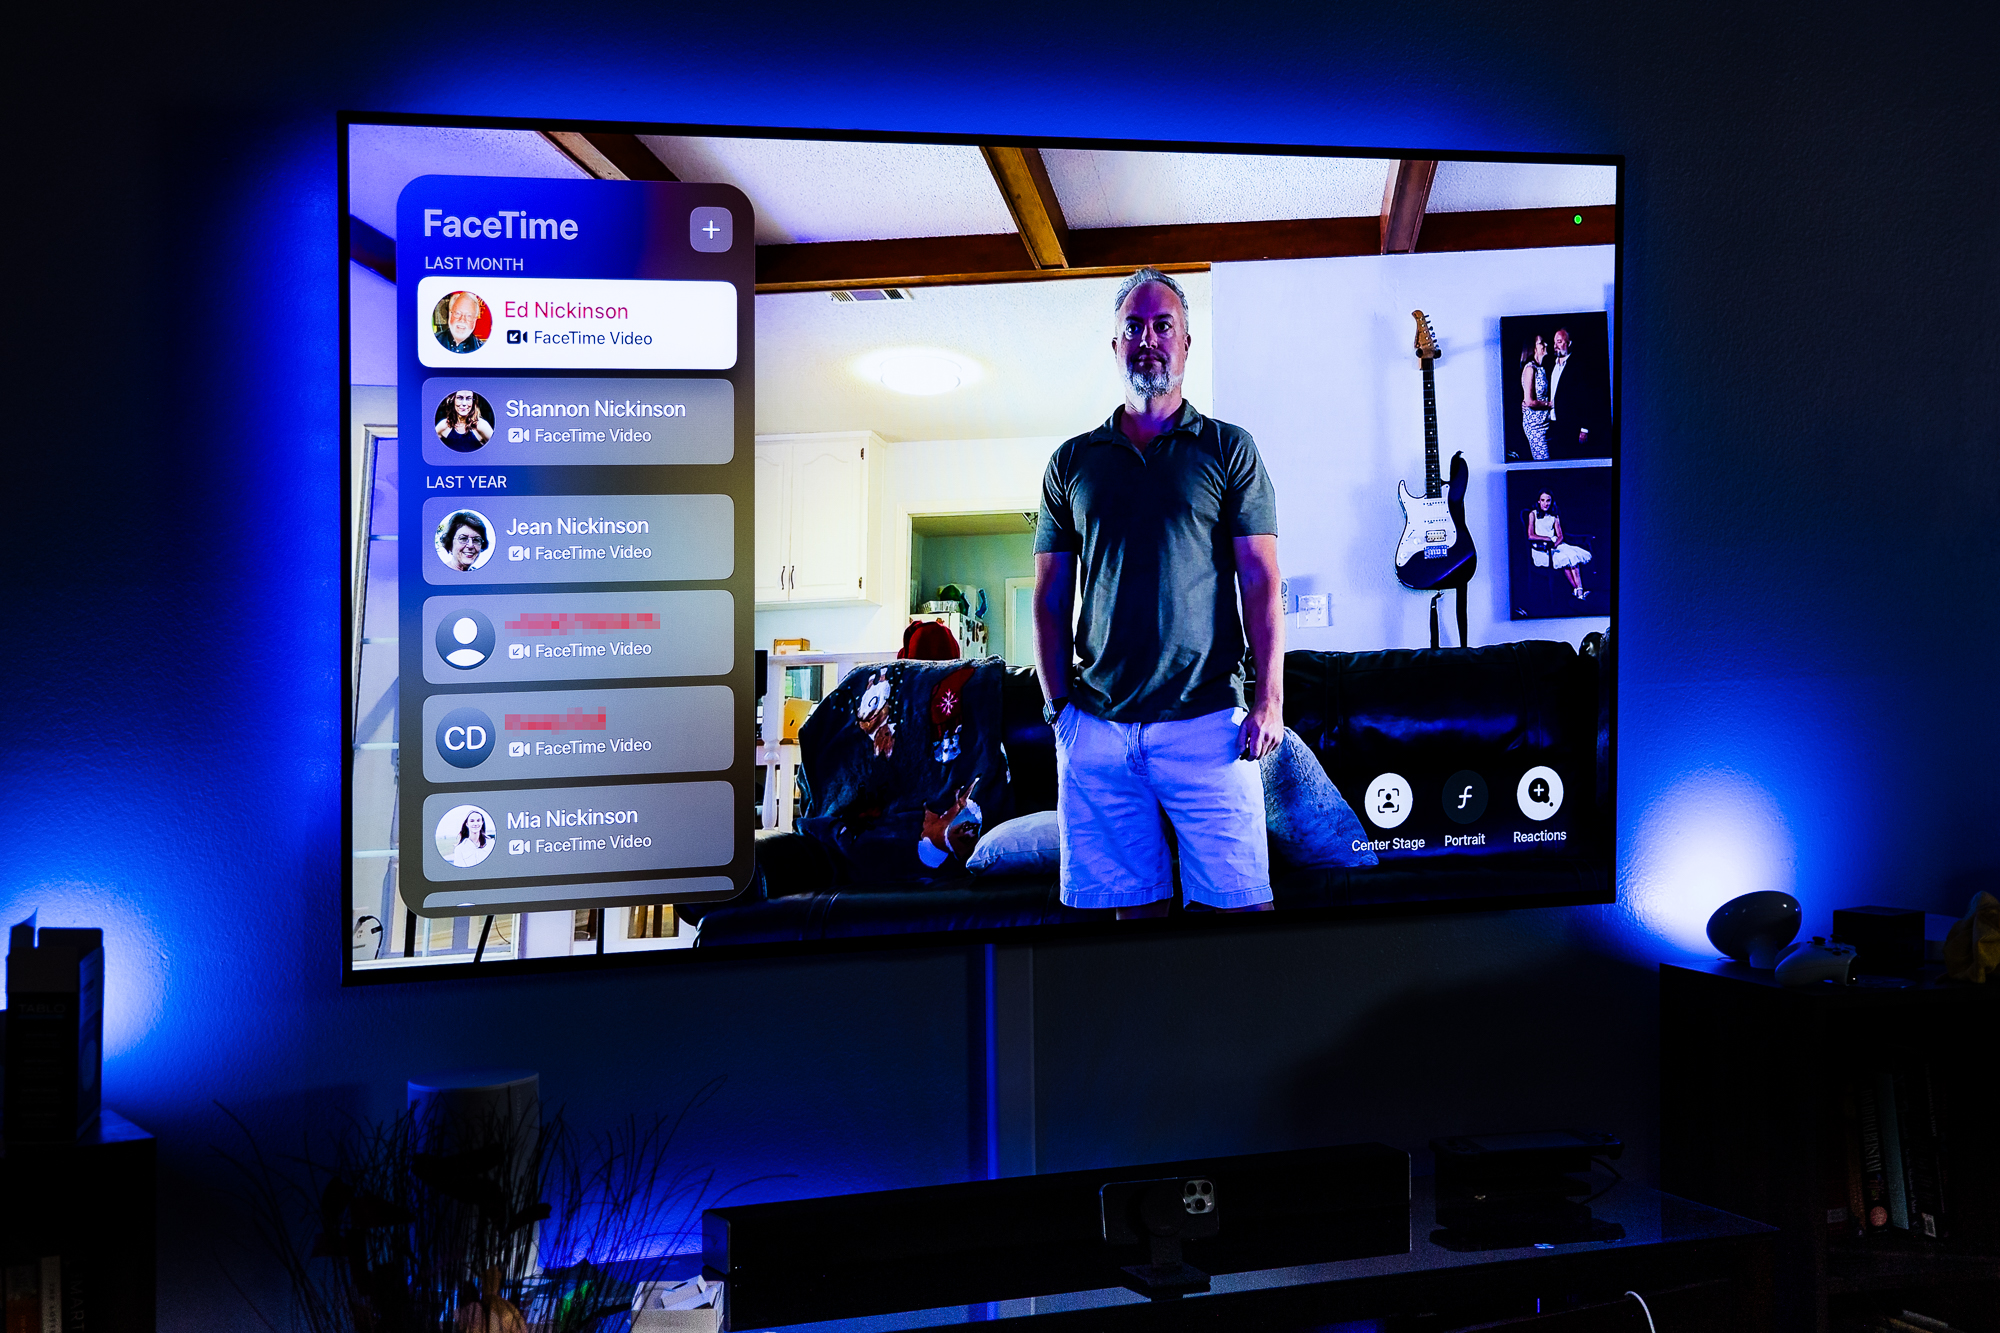 Phil Nickinson realizando una videollamada en FaceTime en el Apple TV 4K